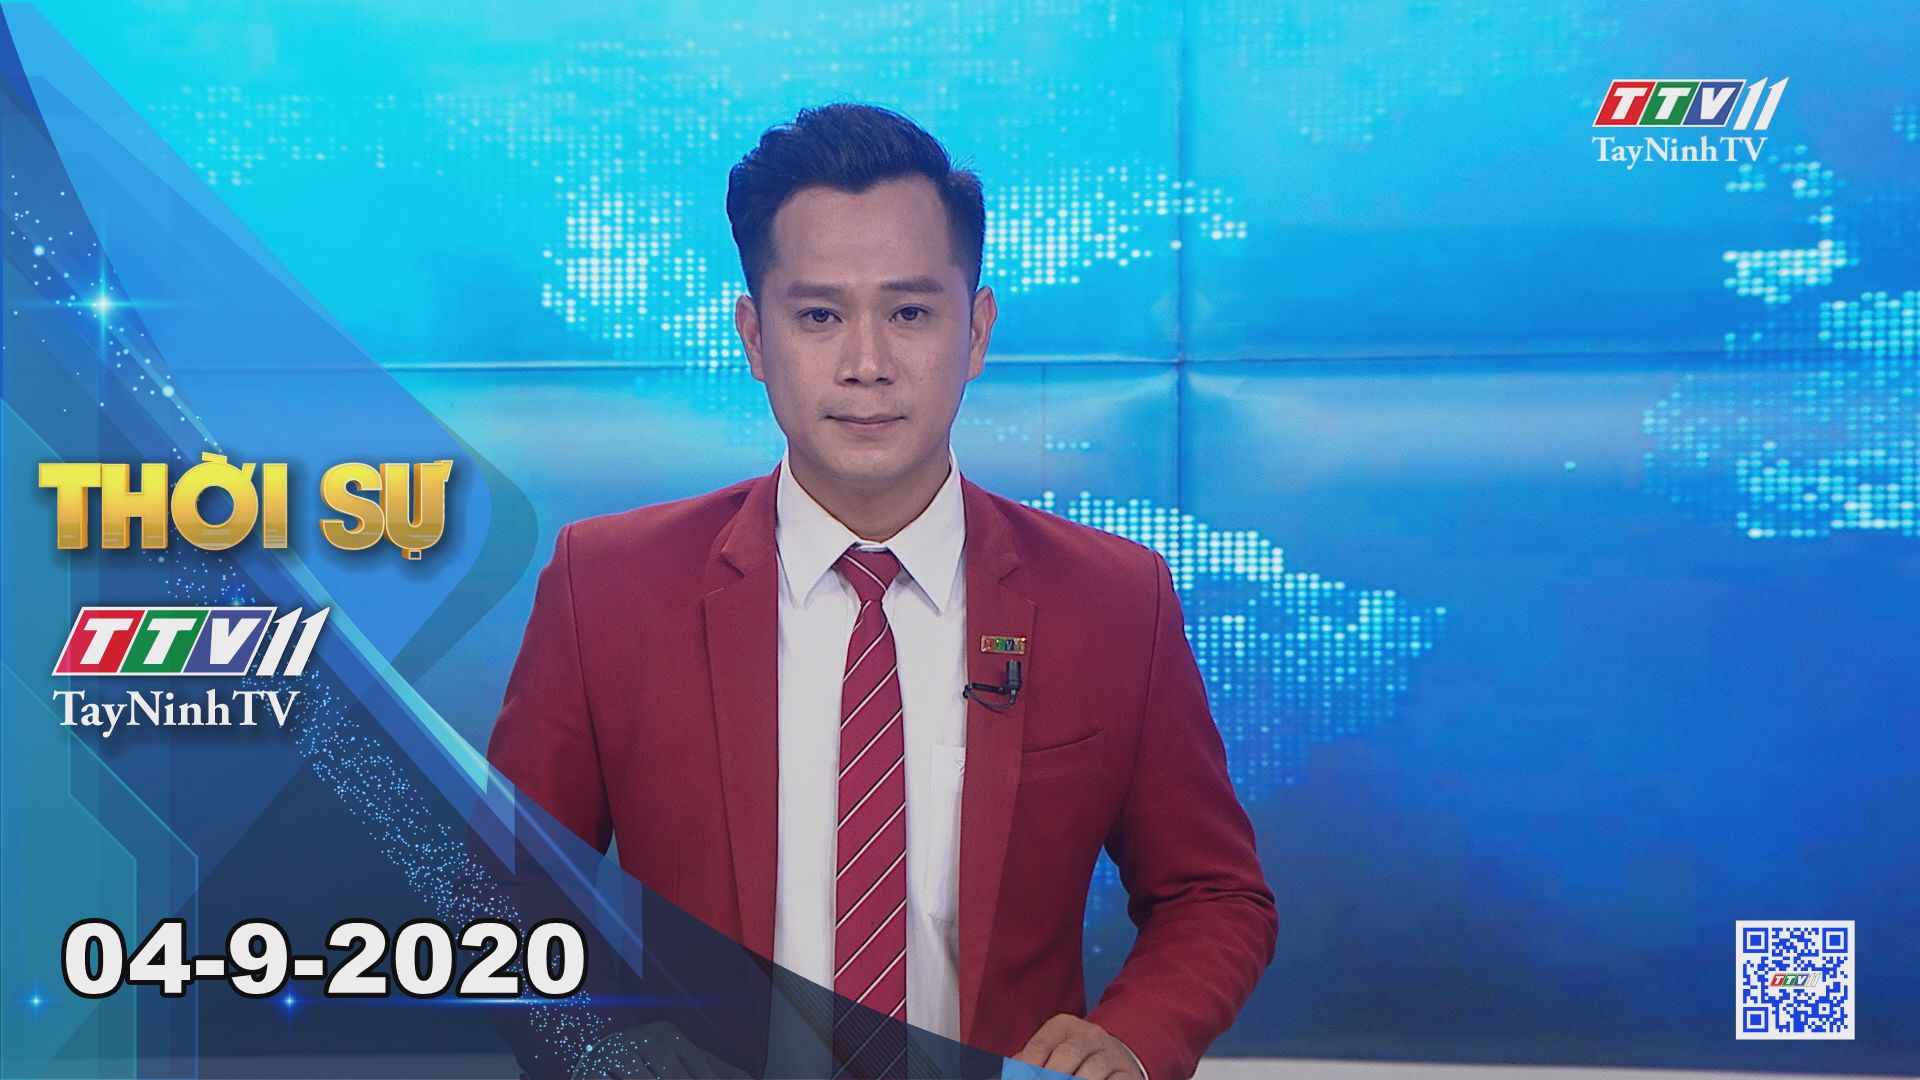 Thời sự Tây Ninh 04-9-2020 | Tin tức hôm nay | TayNinhTV